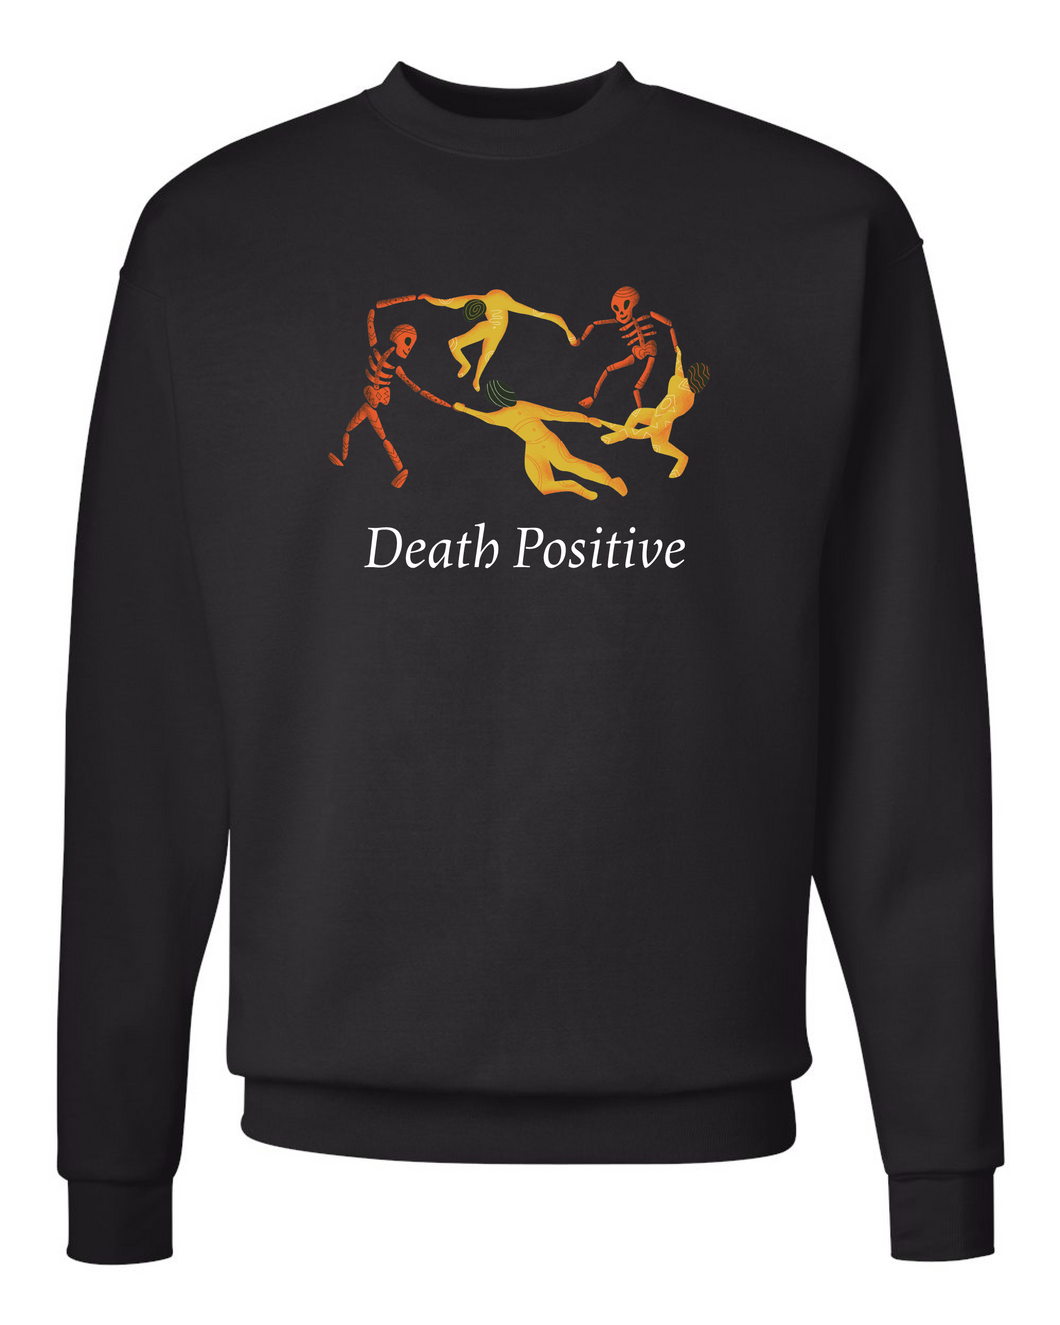 Dancing Death Positive Crewneck Sweatshirt